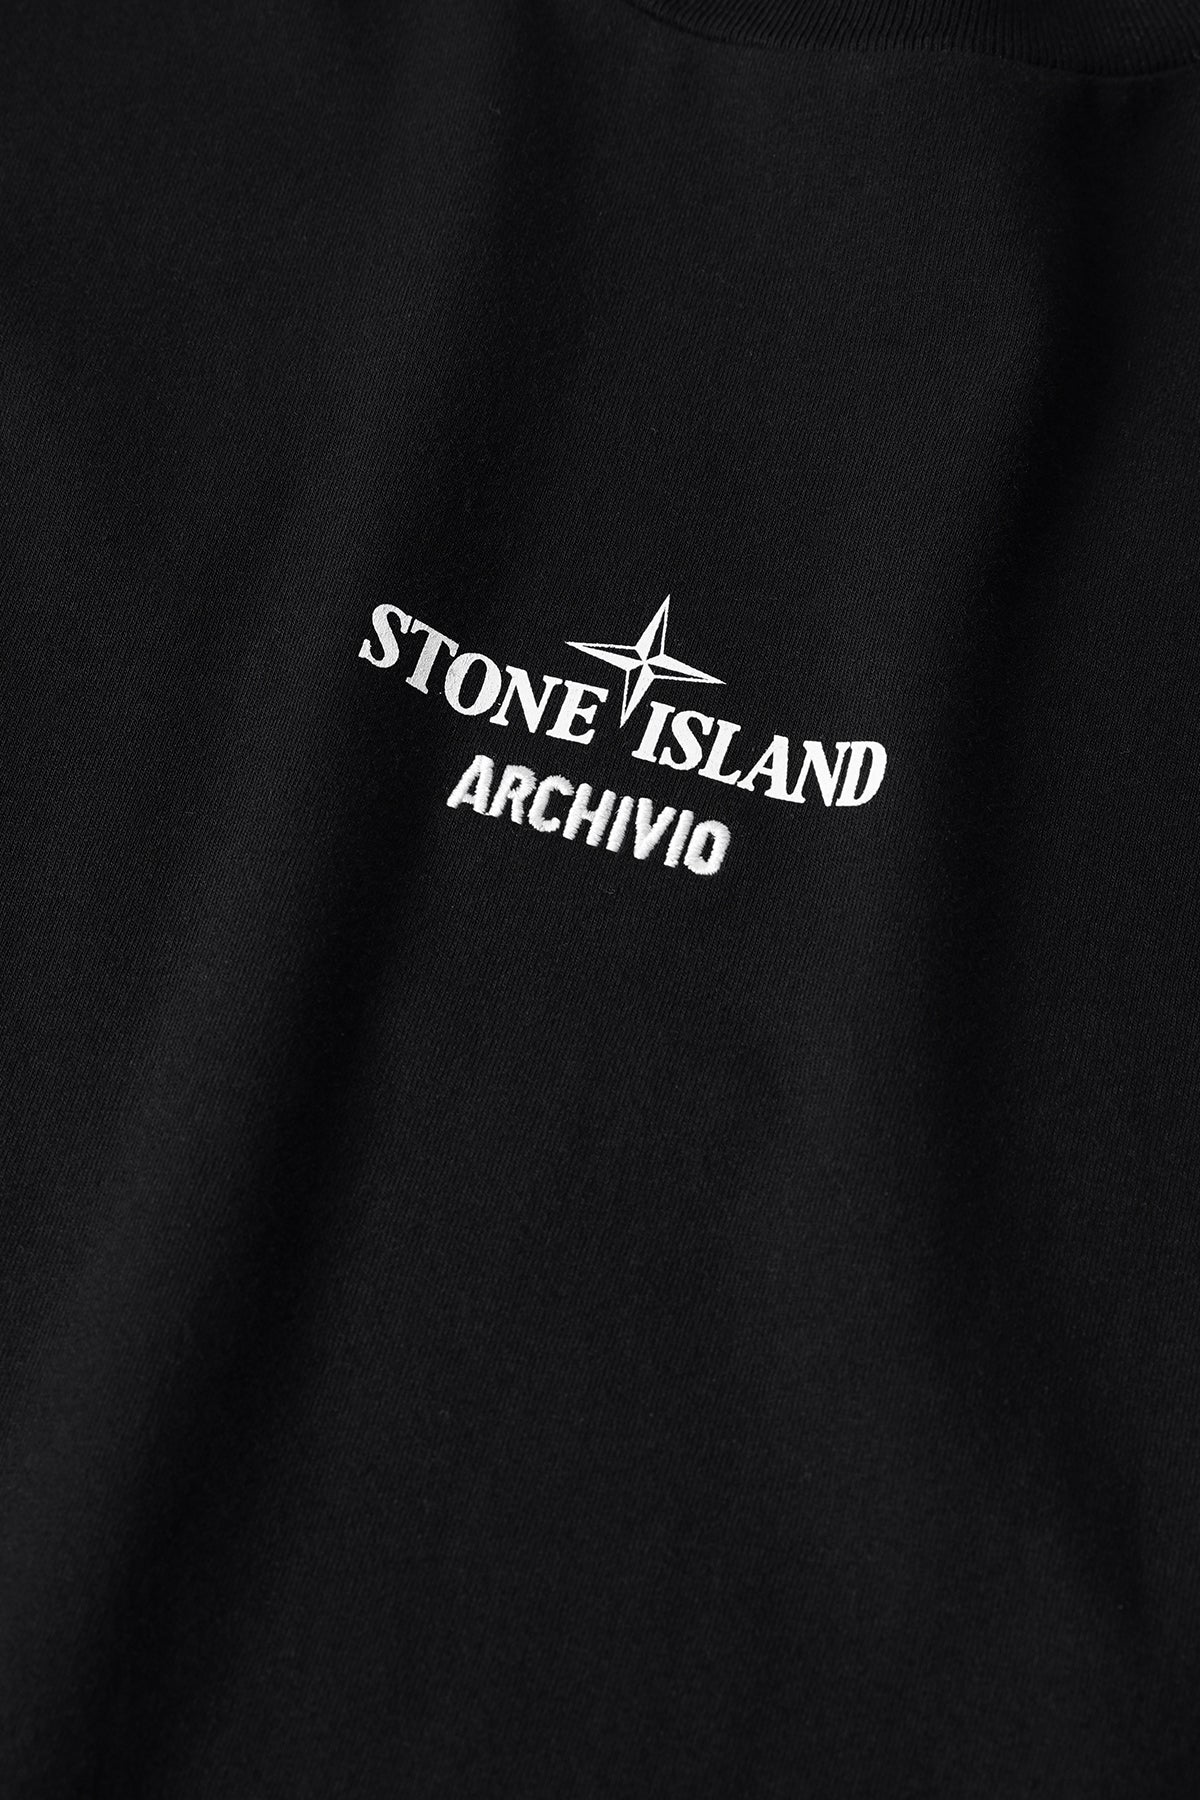 Stone Island Archivio majica crna-1